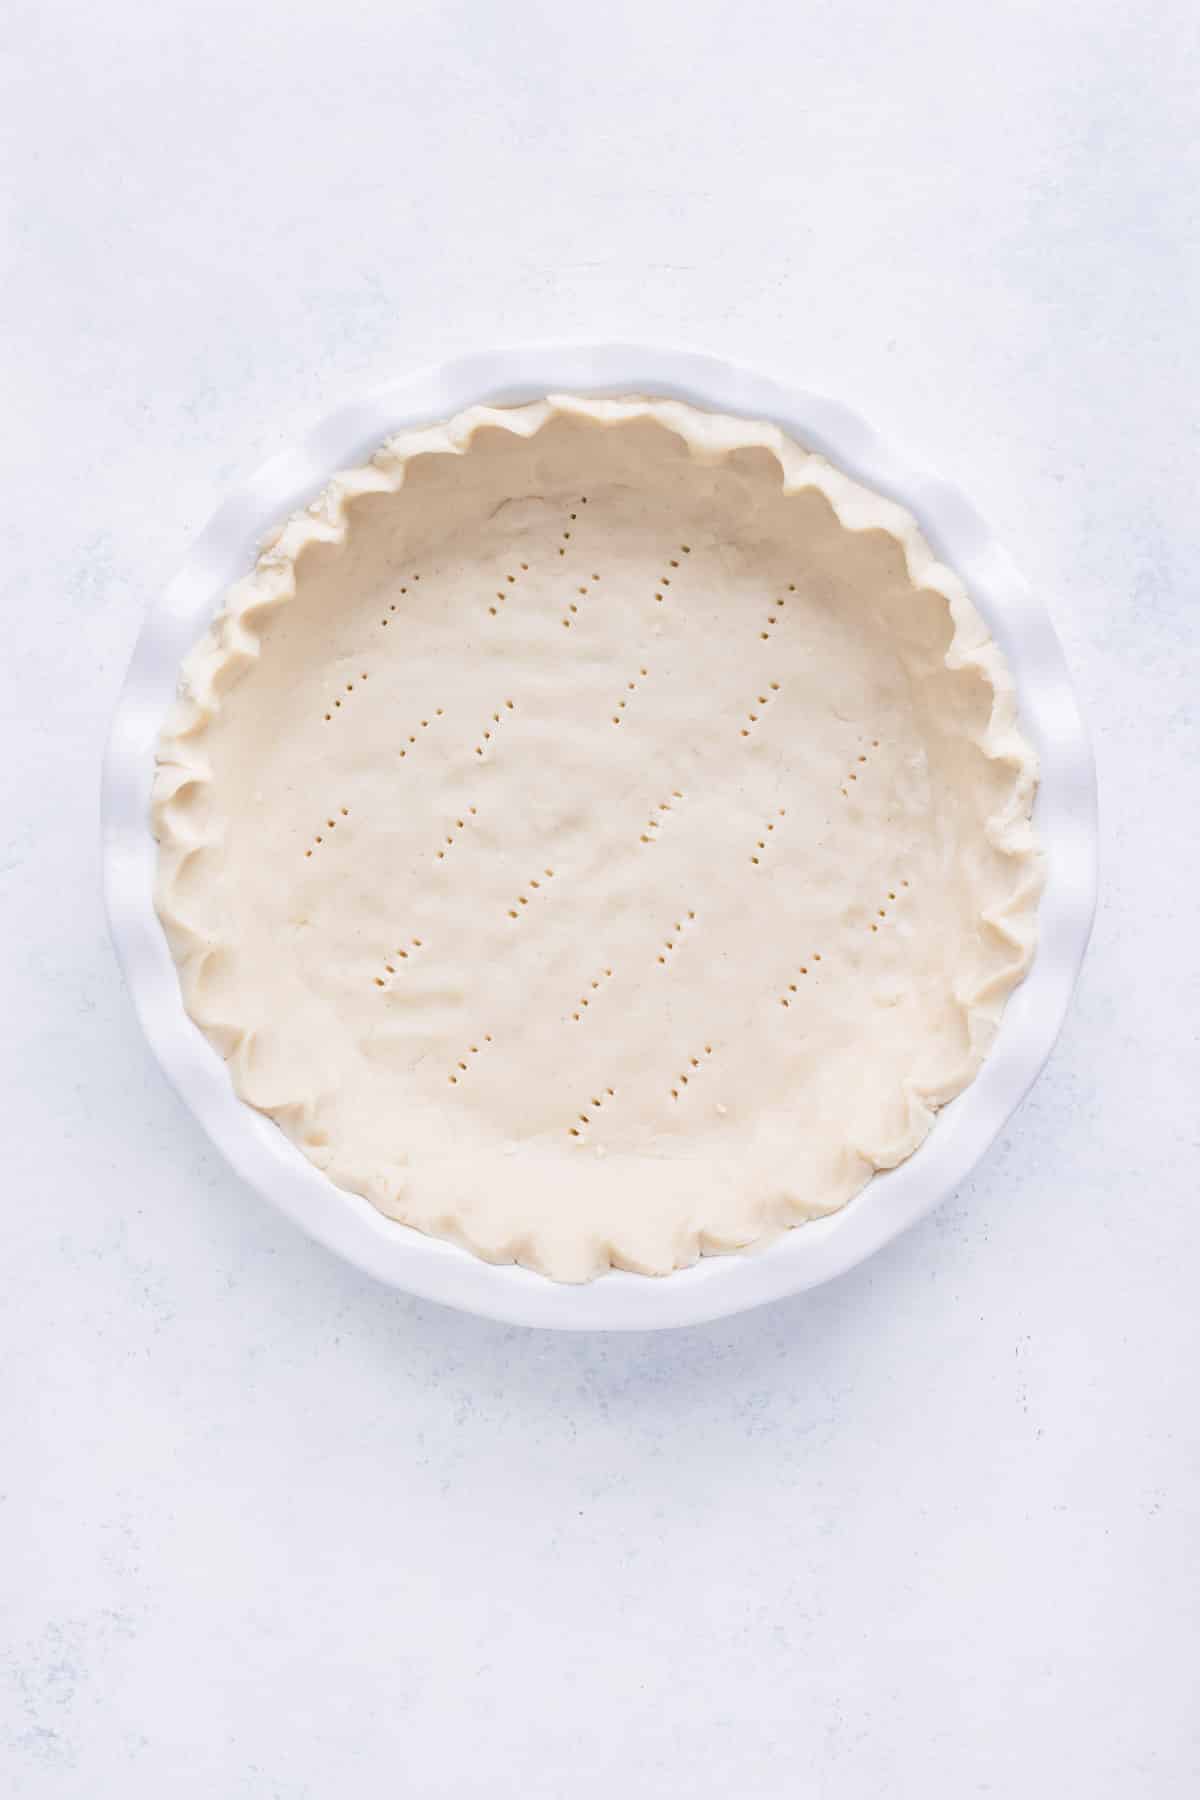 Pie dough is prepared in a pie dish.